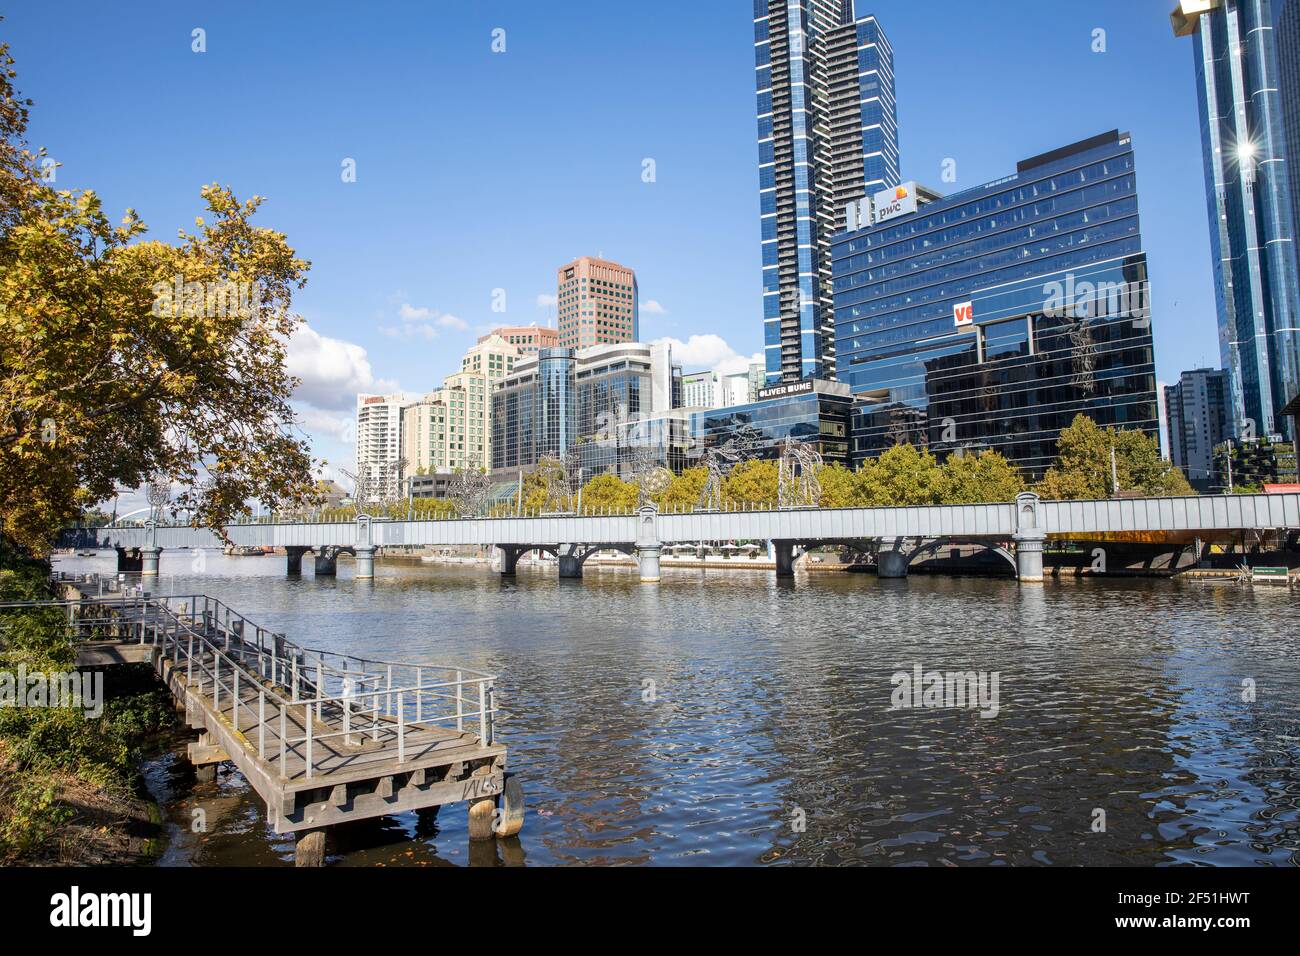 Yarra River und Melbourne City Centre Skyline mit Sandridge Immigration Bridge Crossing, eine ehemalige Zugbrücke, die heute von Fußgängern und Radfahrern genutzt wird Stockfoto